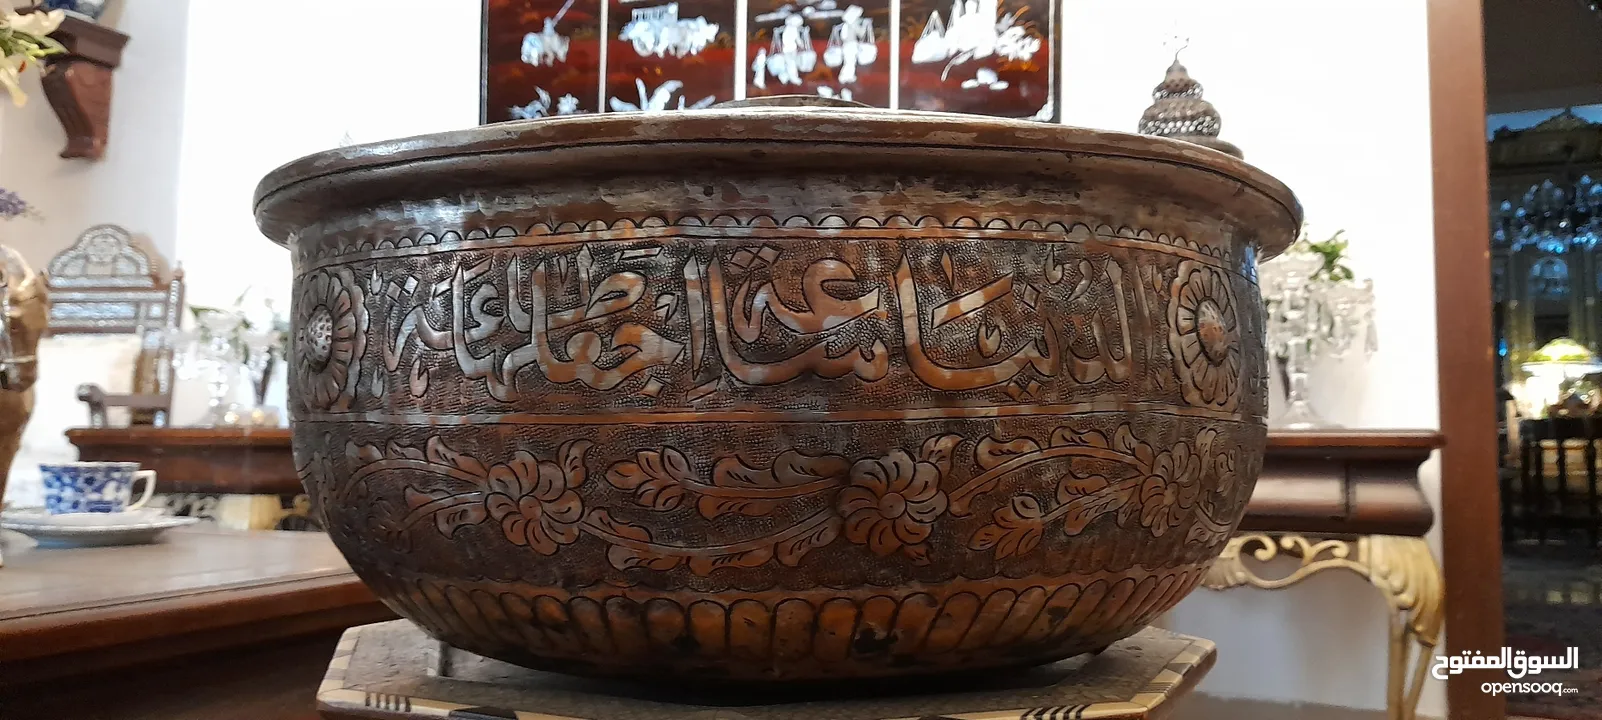 تحفه سلطانيه  فخمة قدر كبير جدا  تحغه متحفية عثمانية كبير نقش وكتابات نحاس احمر 150 عام